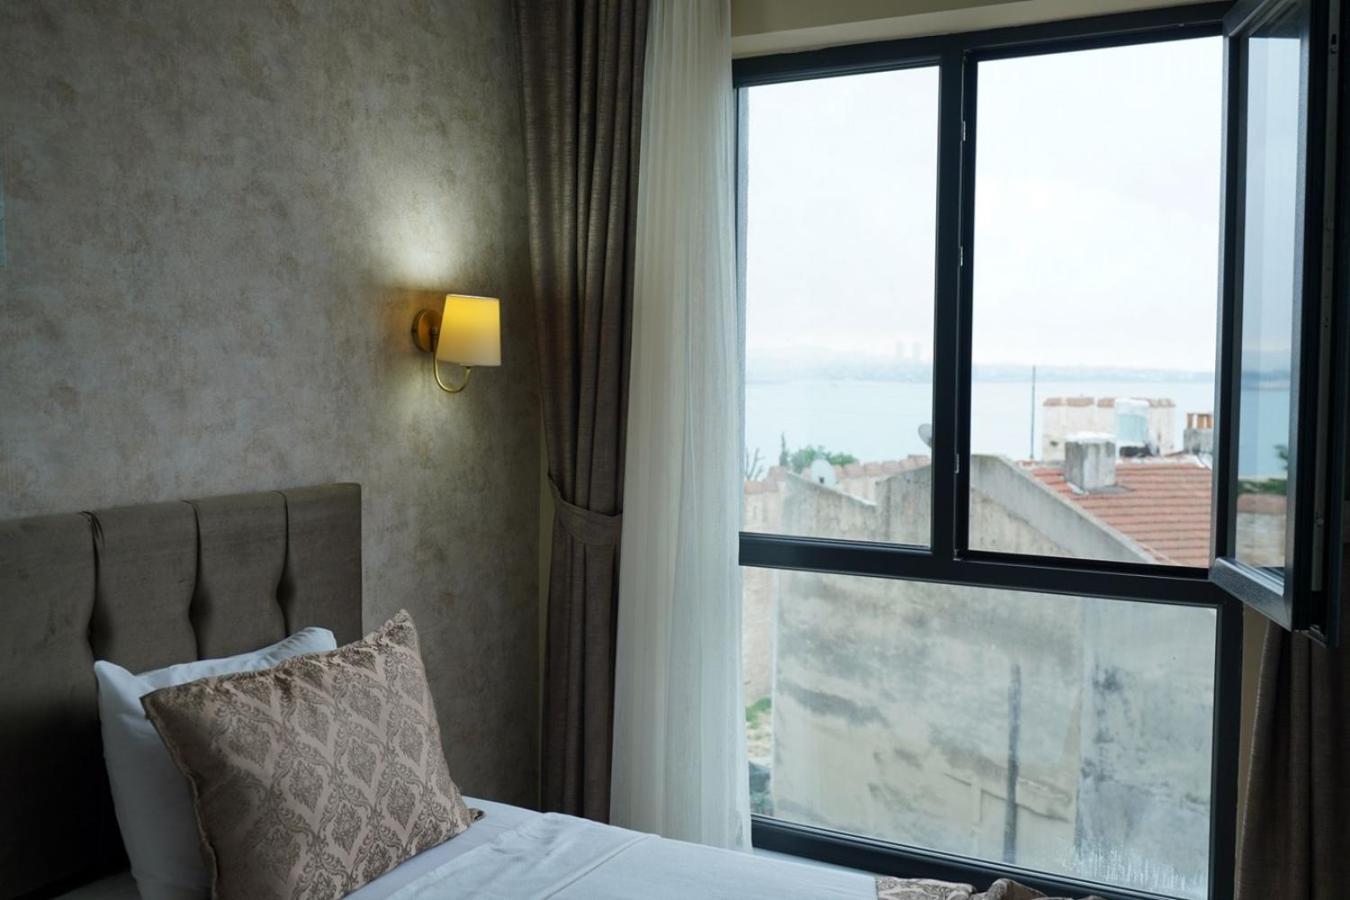 Sultan Hamit Hotel Isztambul Kültér fotó